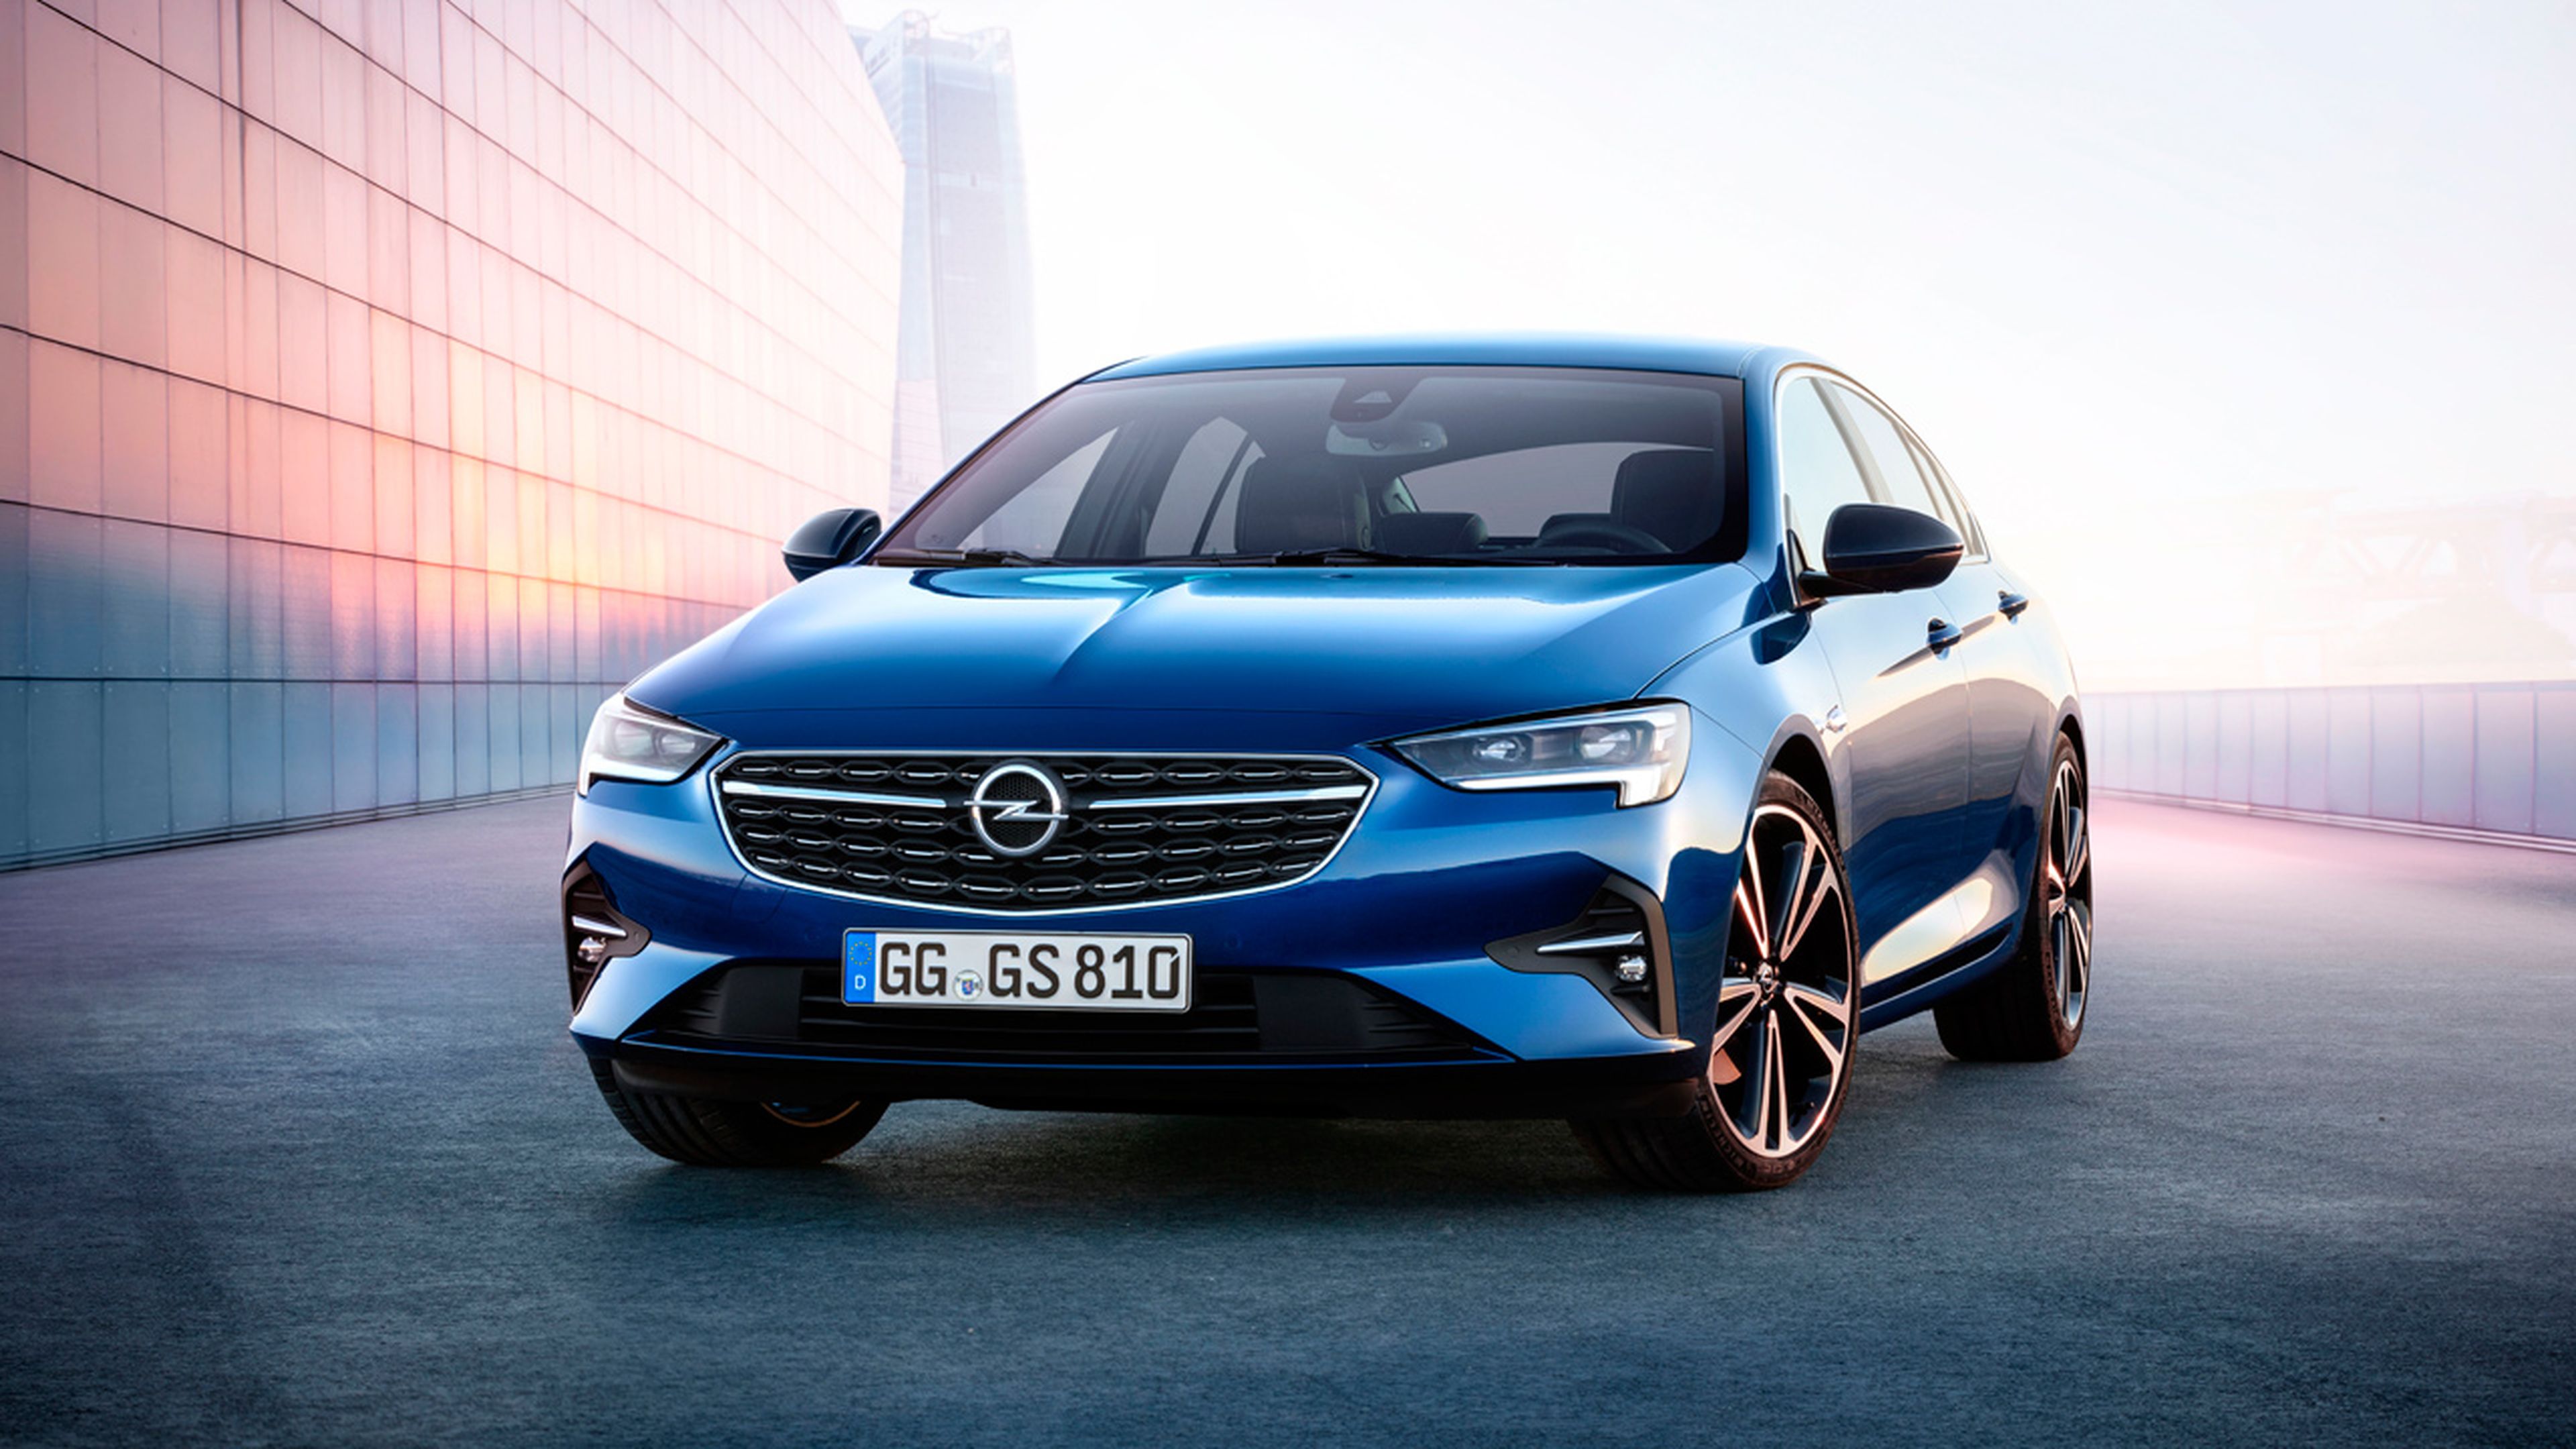 El Insignia se actualizó a finales de 2020. Será la última actualización fuerte antes del nuevo modelo. Foto: Opel